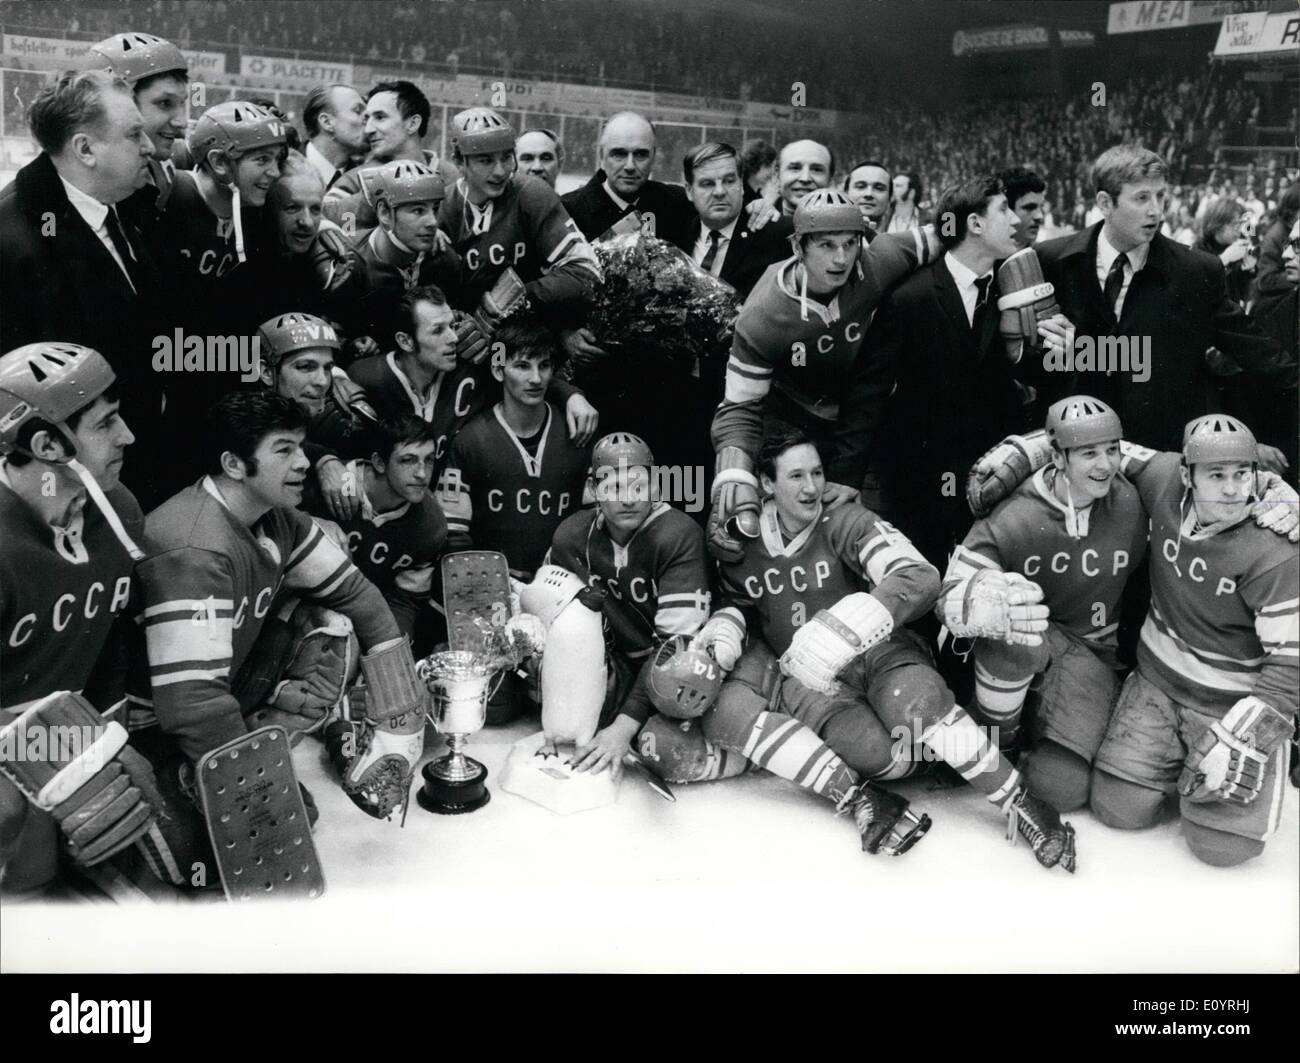 Apr. 04, 1971 - Unione Sovjet campione del mondo di hockey su ghiaccio. La foto mostra il team sovietico come felice vincitore del titolo nel mondo del hockey di ghiaccio campione torneo a Ginevra per giorno. Foto Stock